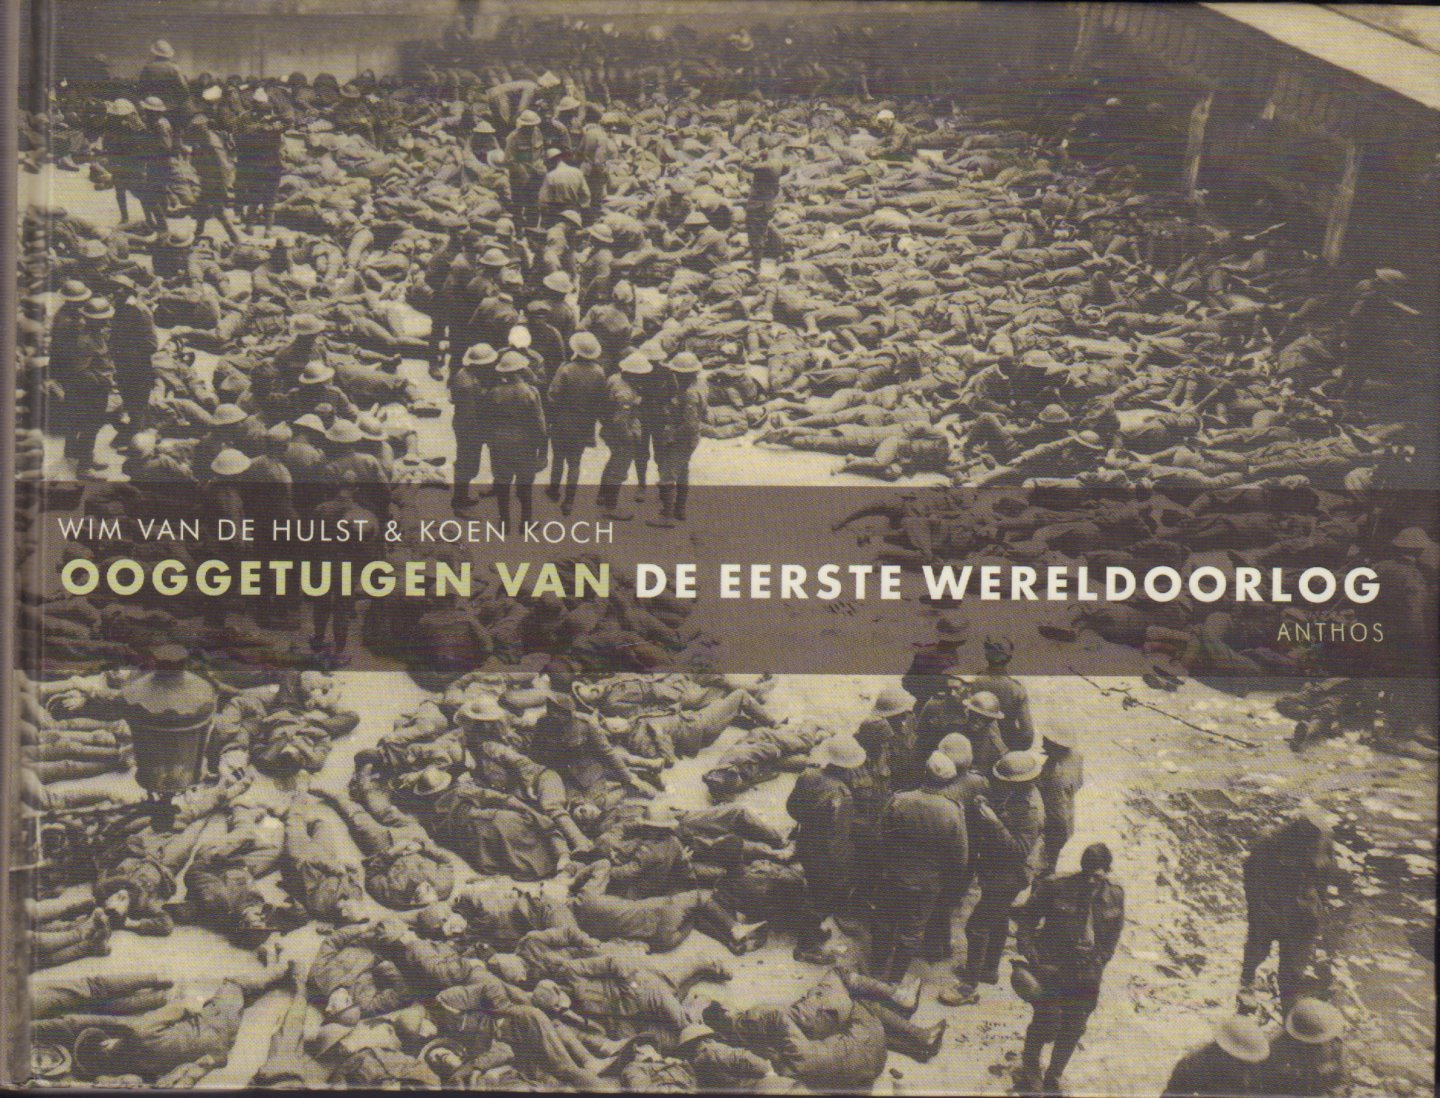 Hulst, Wim van de & Koen Koch - Ooggetuigen van de Eerste Wereldoorlog, 251 pag. hardcover, gave staat